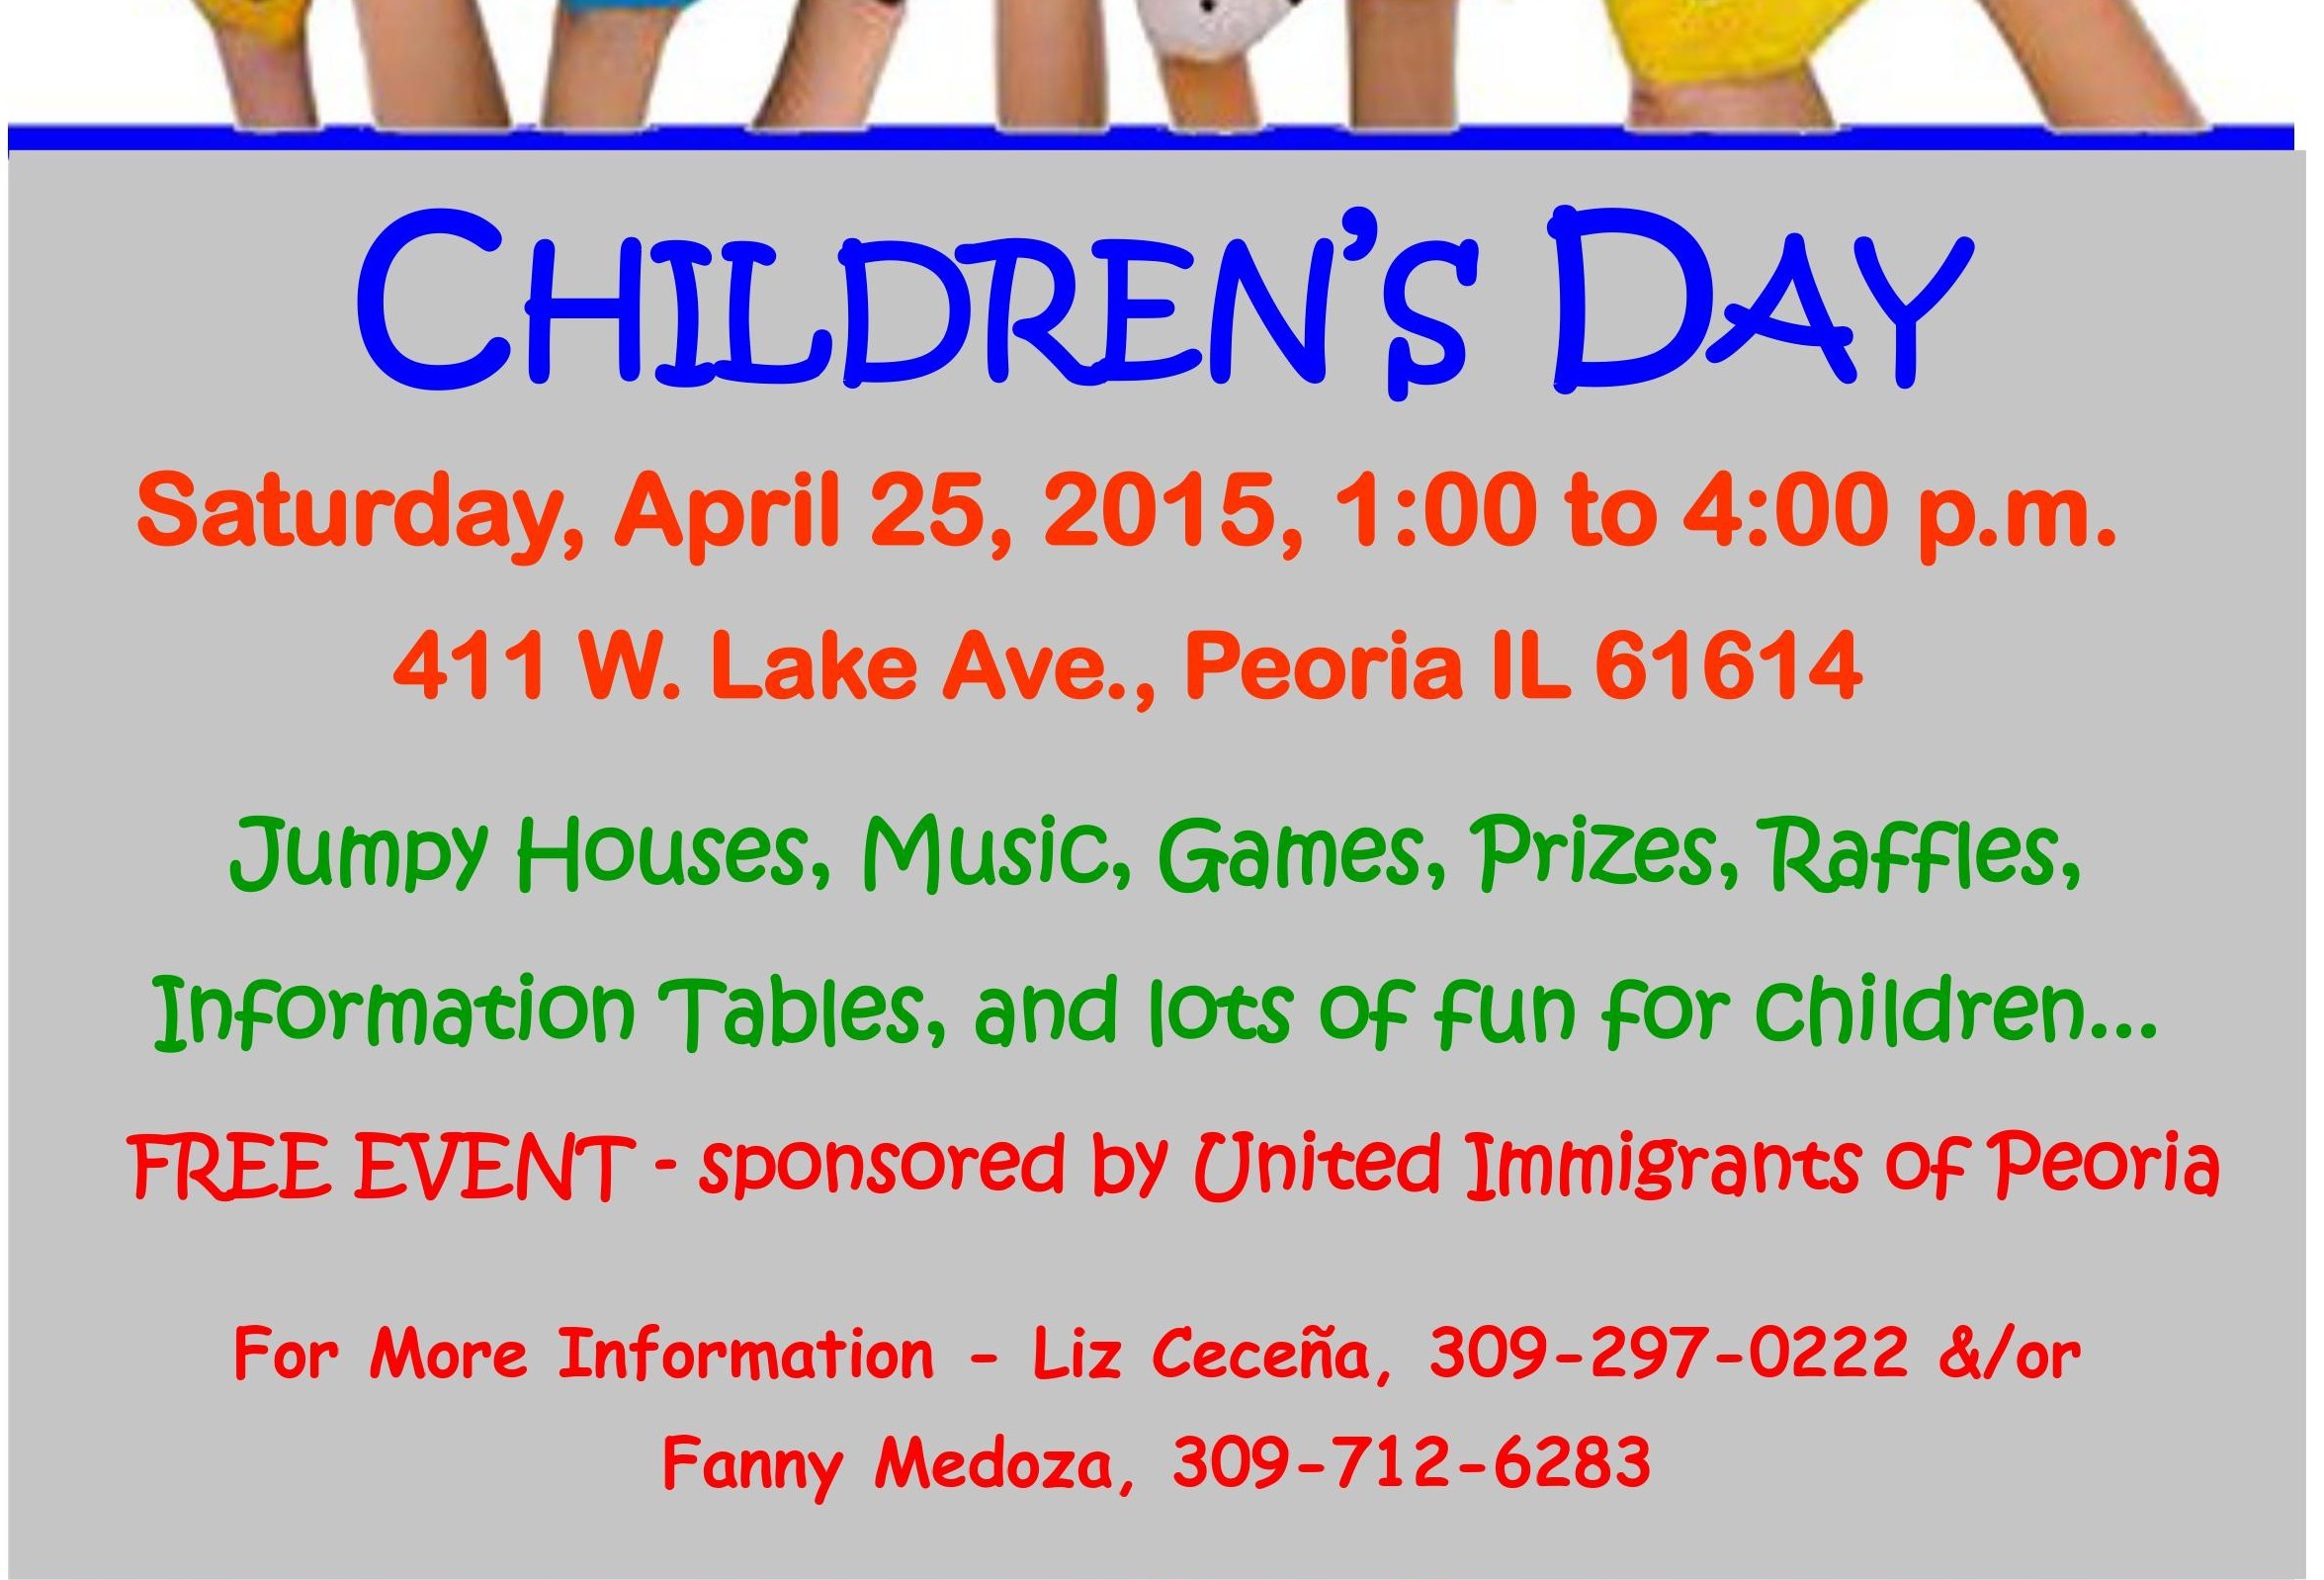 Children's Day Special Program in Peoria, IL: April 25, 2015